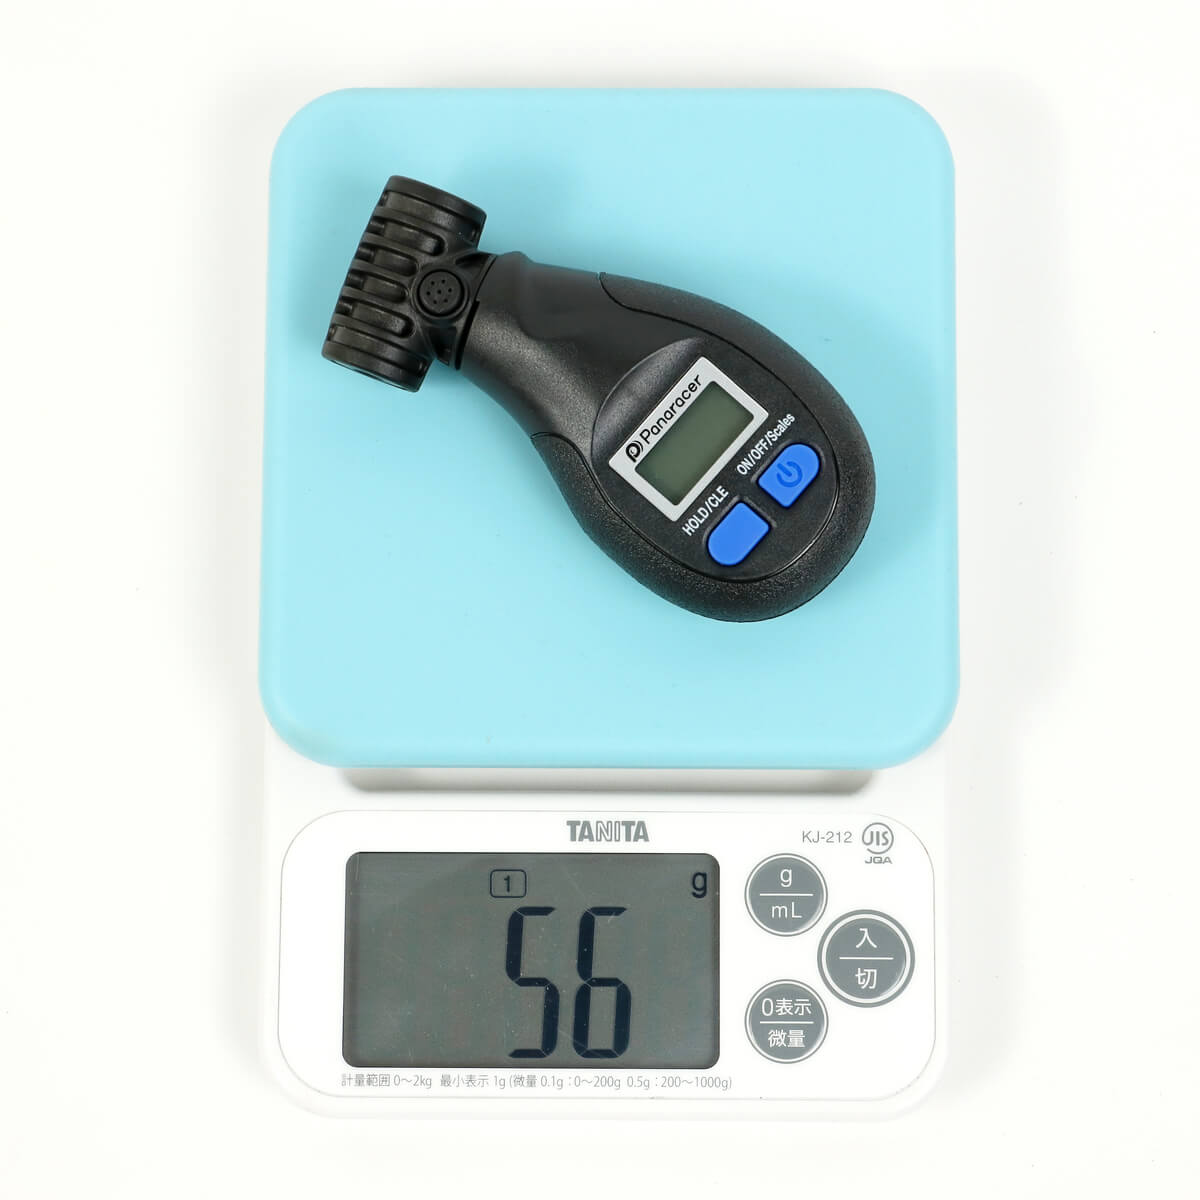 パナレーサー デジタル空気圧計の重量